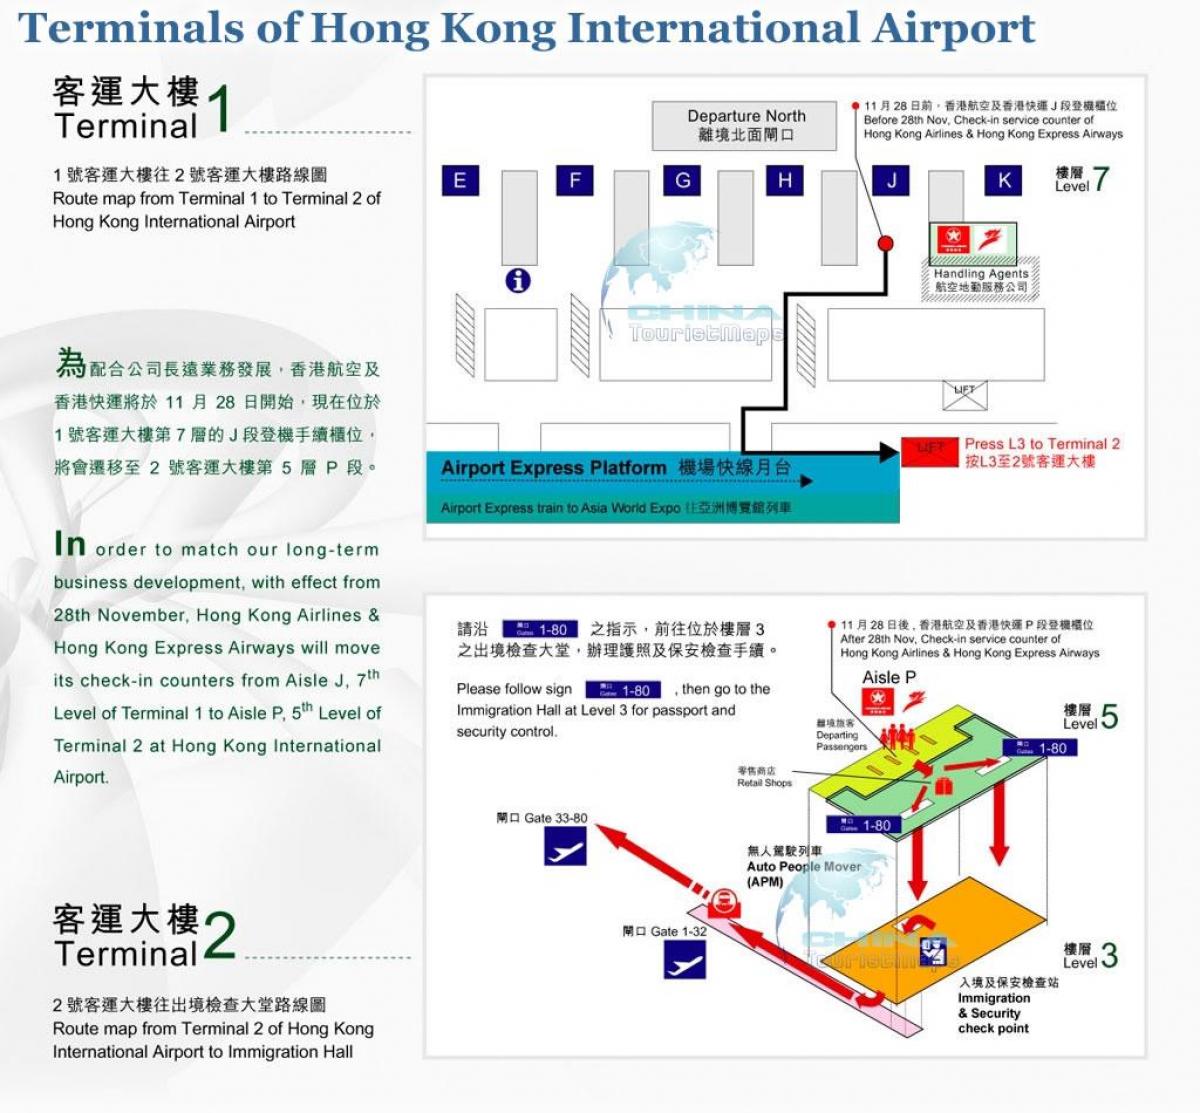 हांगकांग हवाई अड्डे के टर्मिनल 2 के नक्शे